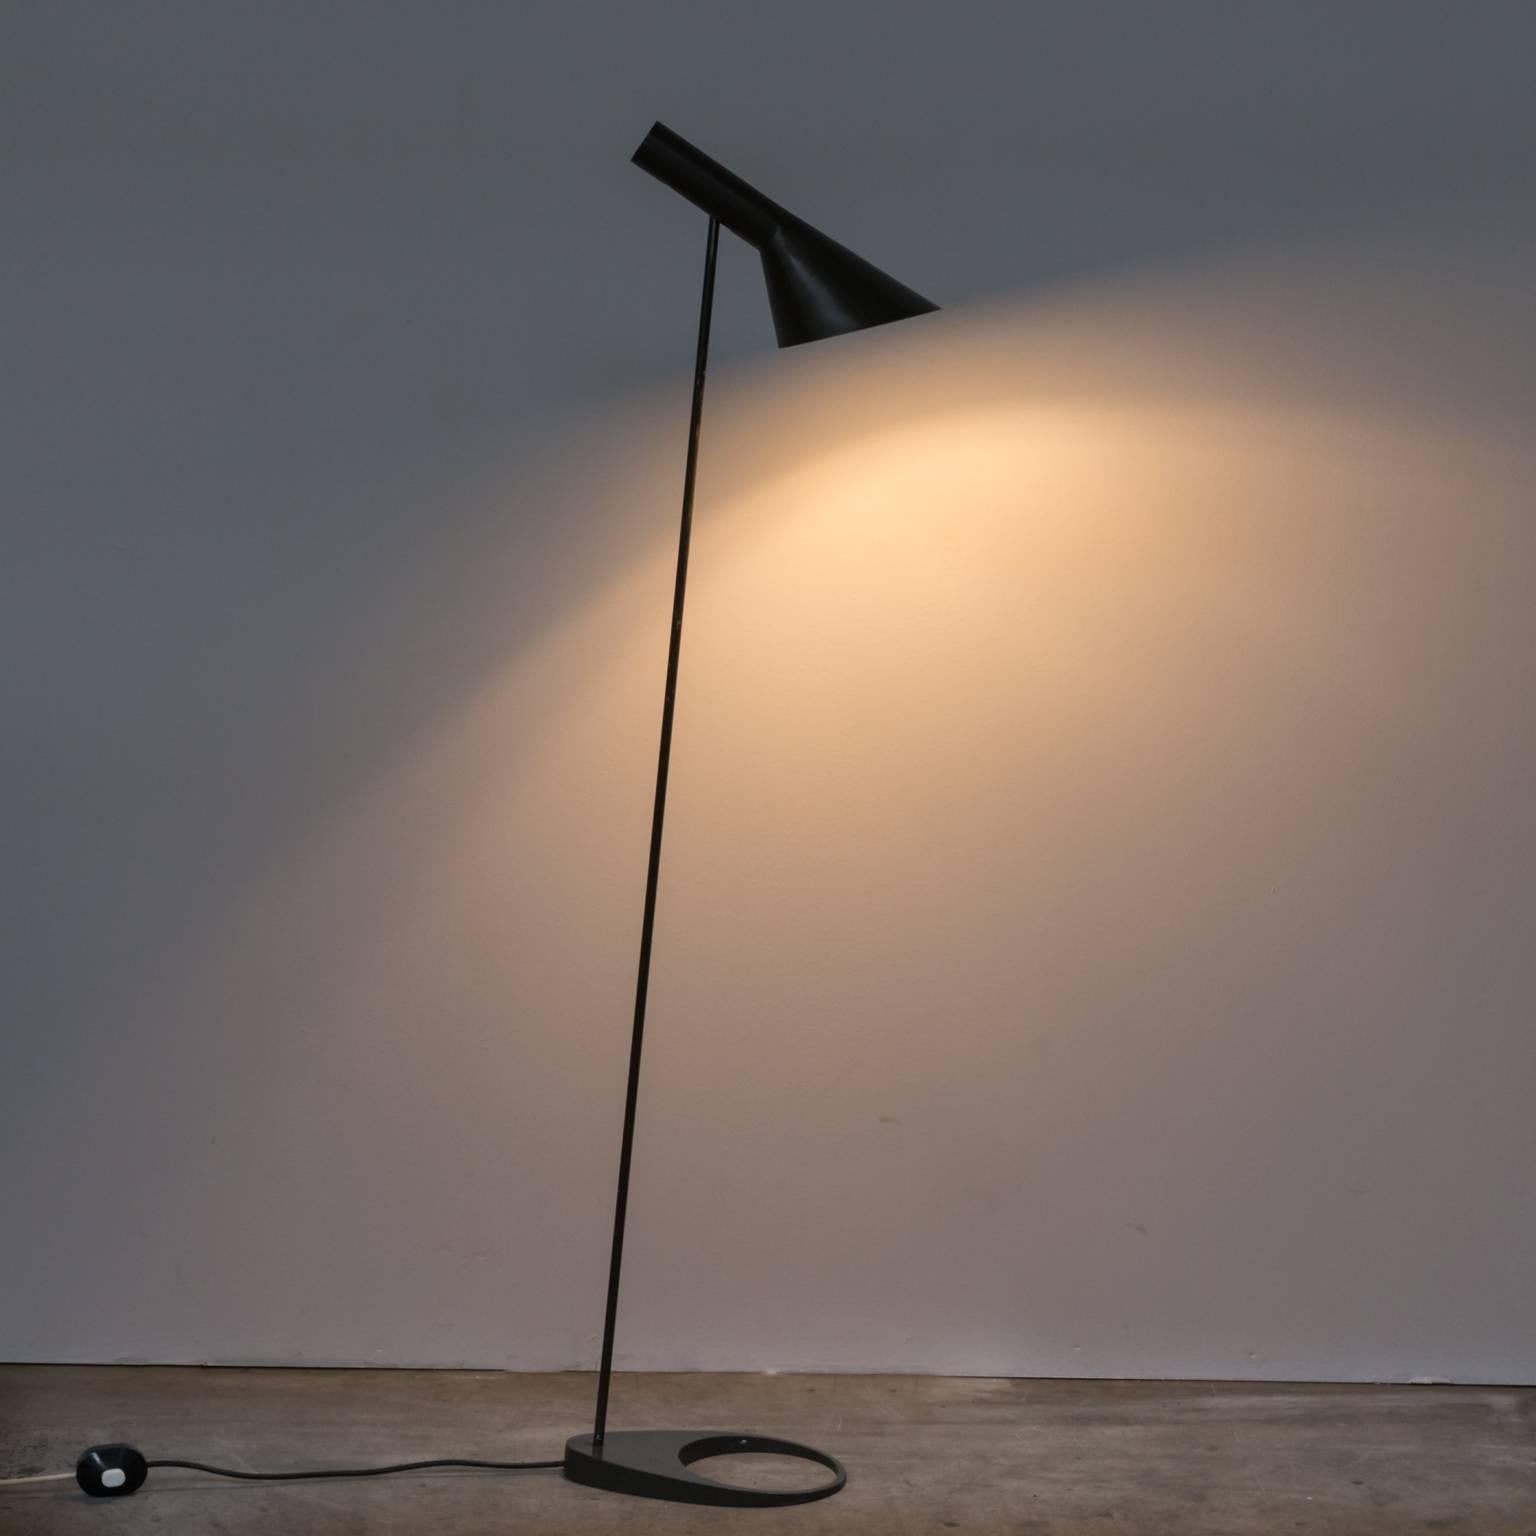 1960s Arne Jacobsen 'AJ' floor lamp for Louis Poulsen, Denmark. Design Classic floor lamp met warm brown lacquered metal. Good condition, wear consistent with age and use. Dimensions: 17.5cm (W) x 27cm (D) x 133cm (H).